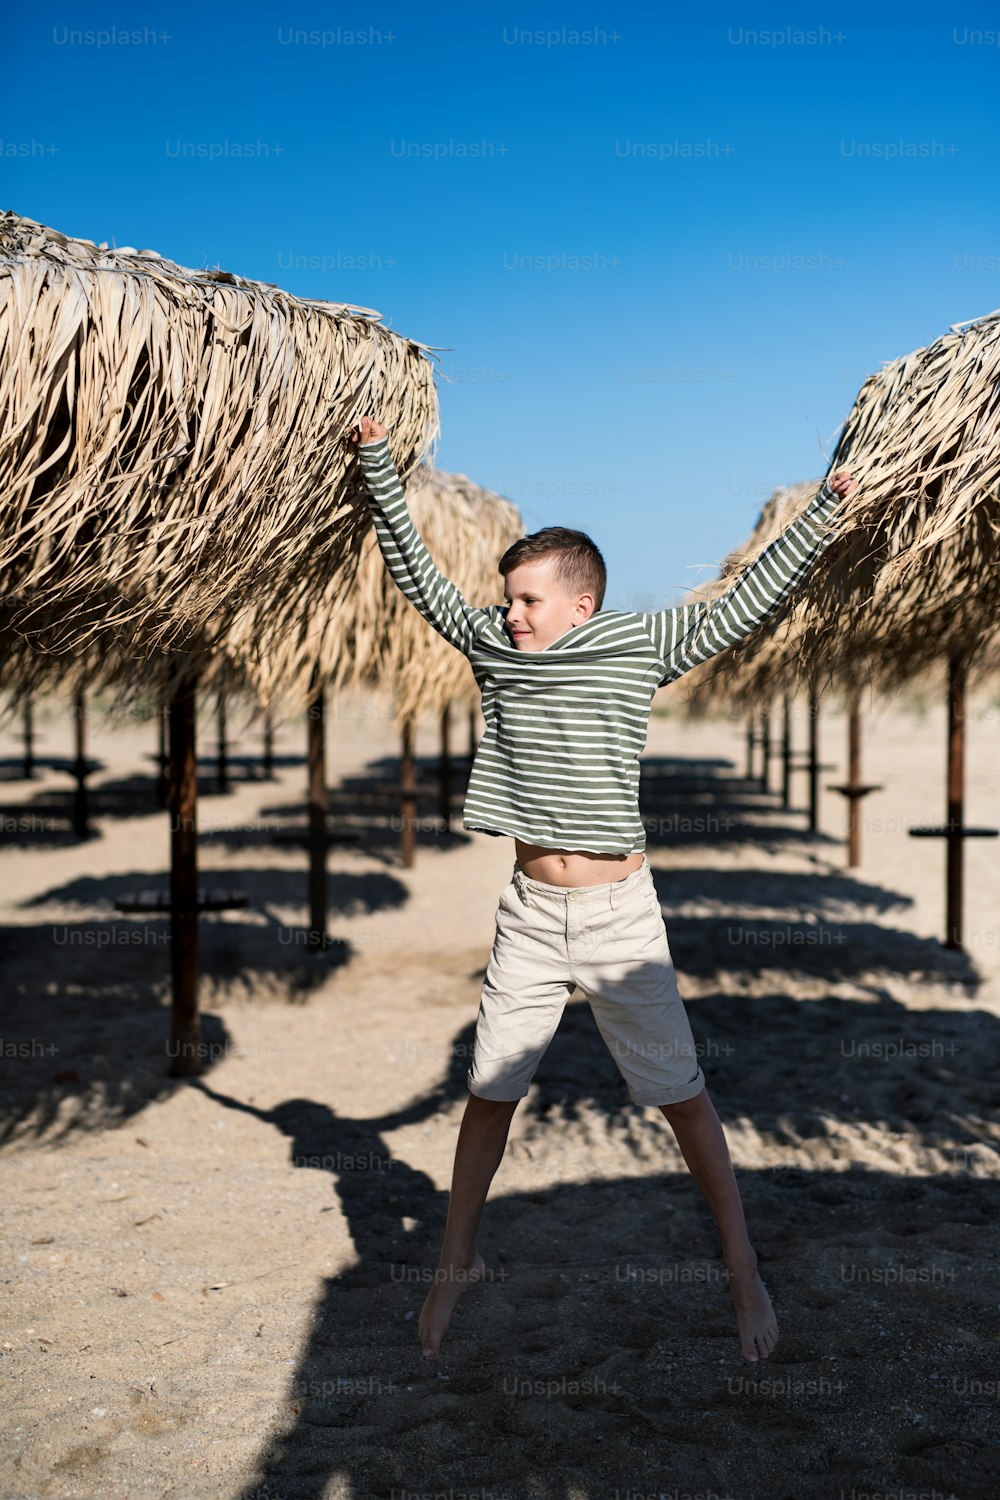 Un petit garçon joyeux jouant à l’extérieur sur une plage de sable, en sautant.